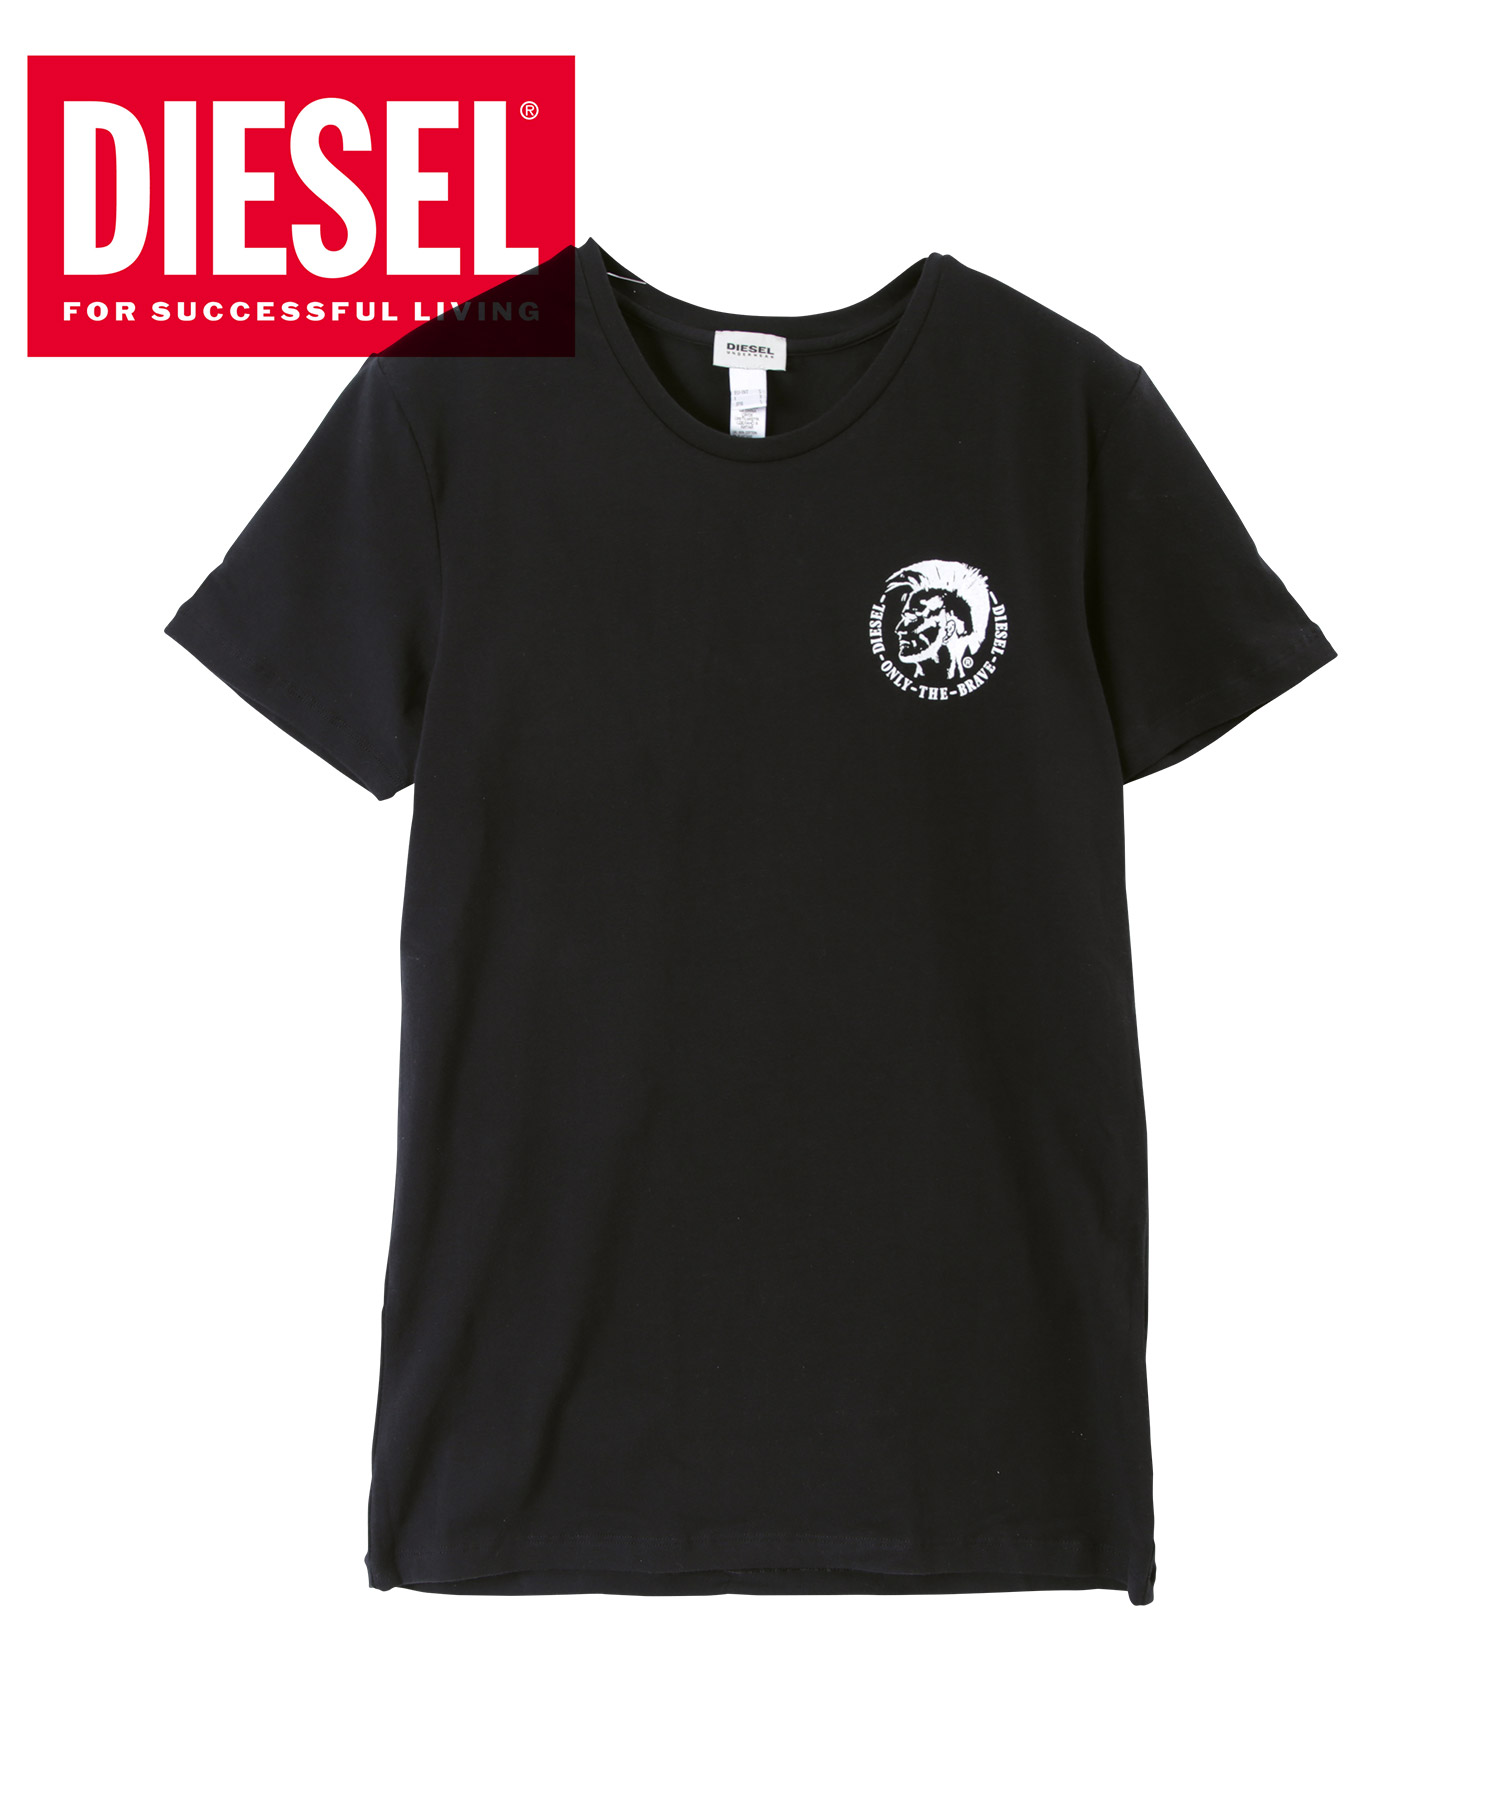 ディーゼル DIESEL メンズ Tシャツ クリスマス 2023 プレゼント ギフト